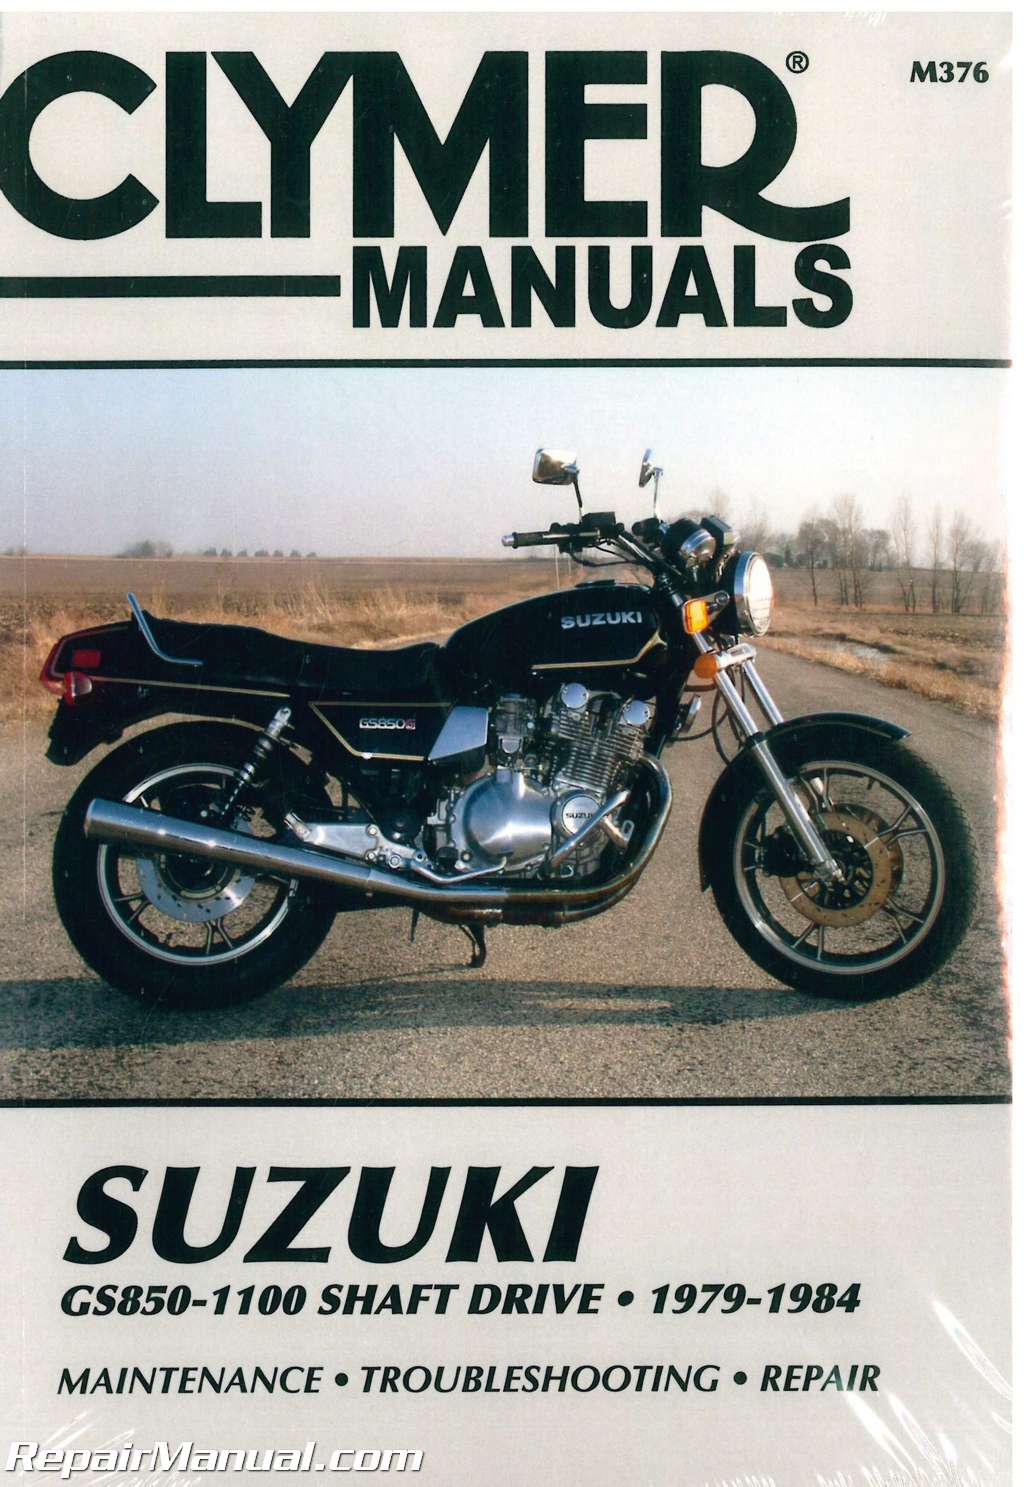 Suzuki GS850 GS1000 1100 G GL GK 1979-1984 Clymer Workshop Manual Service Repair 